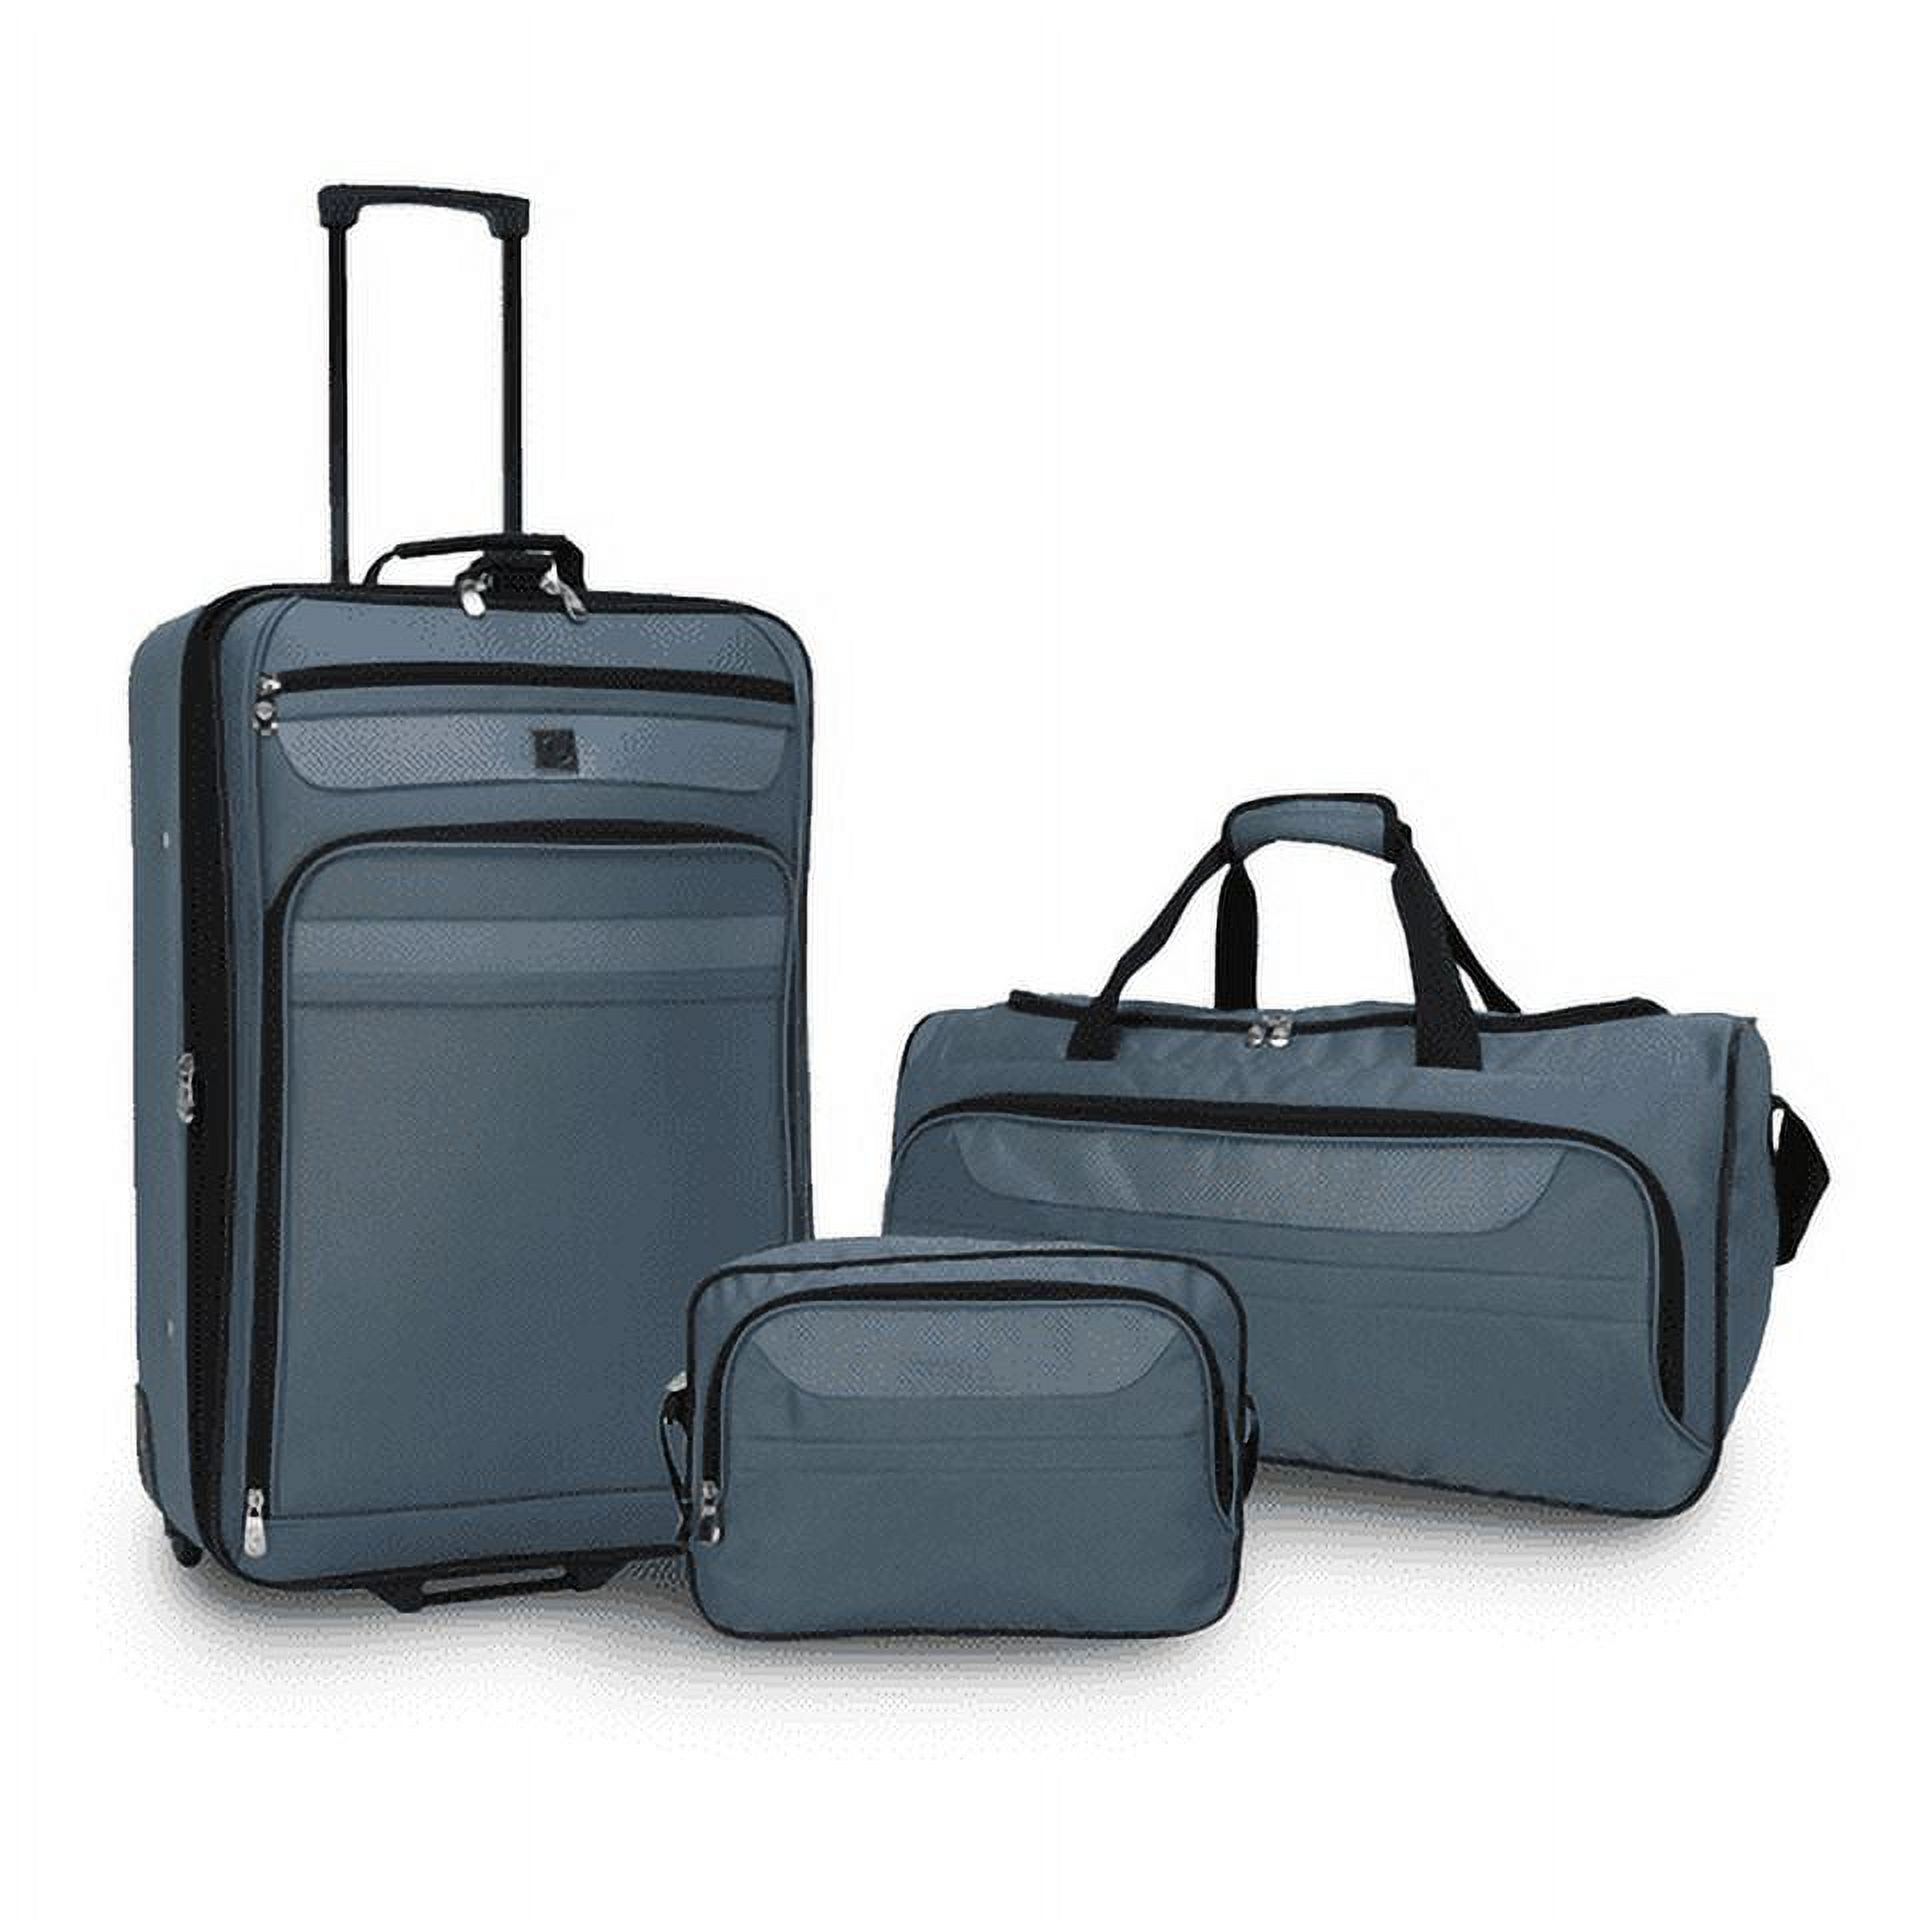 Protege 3-Piece Softside Luggage Value Travel Set - Blue - image 1 of 11